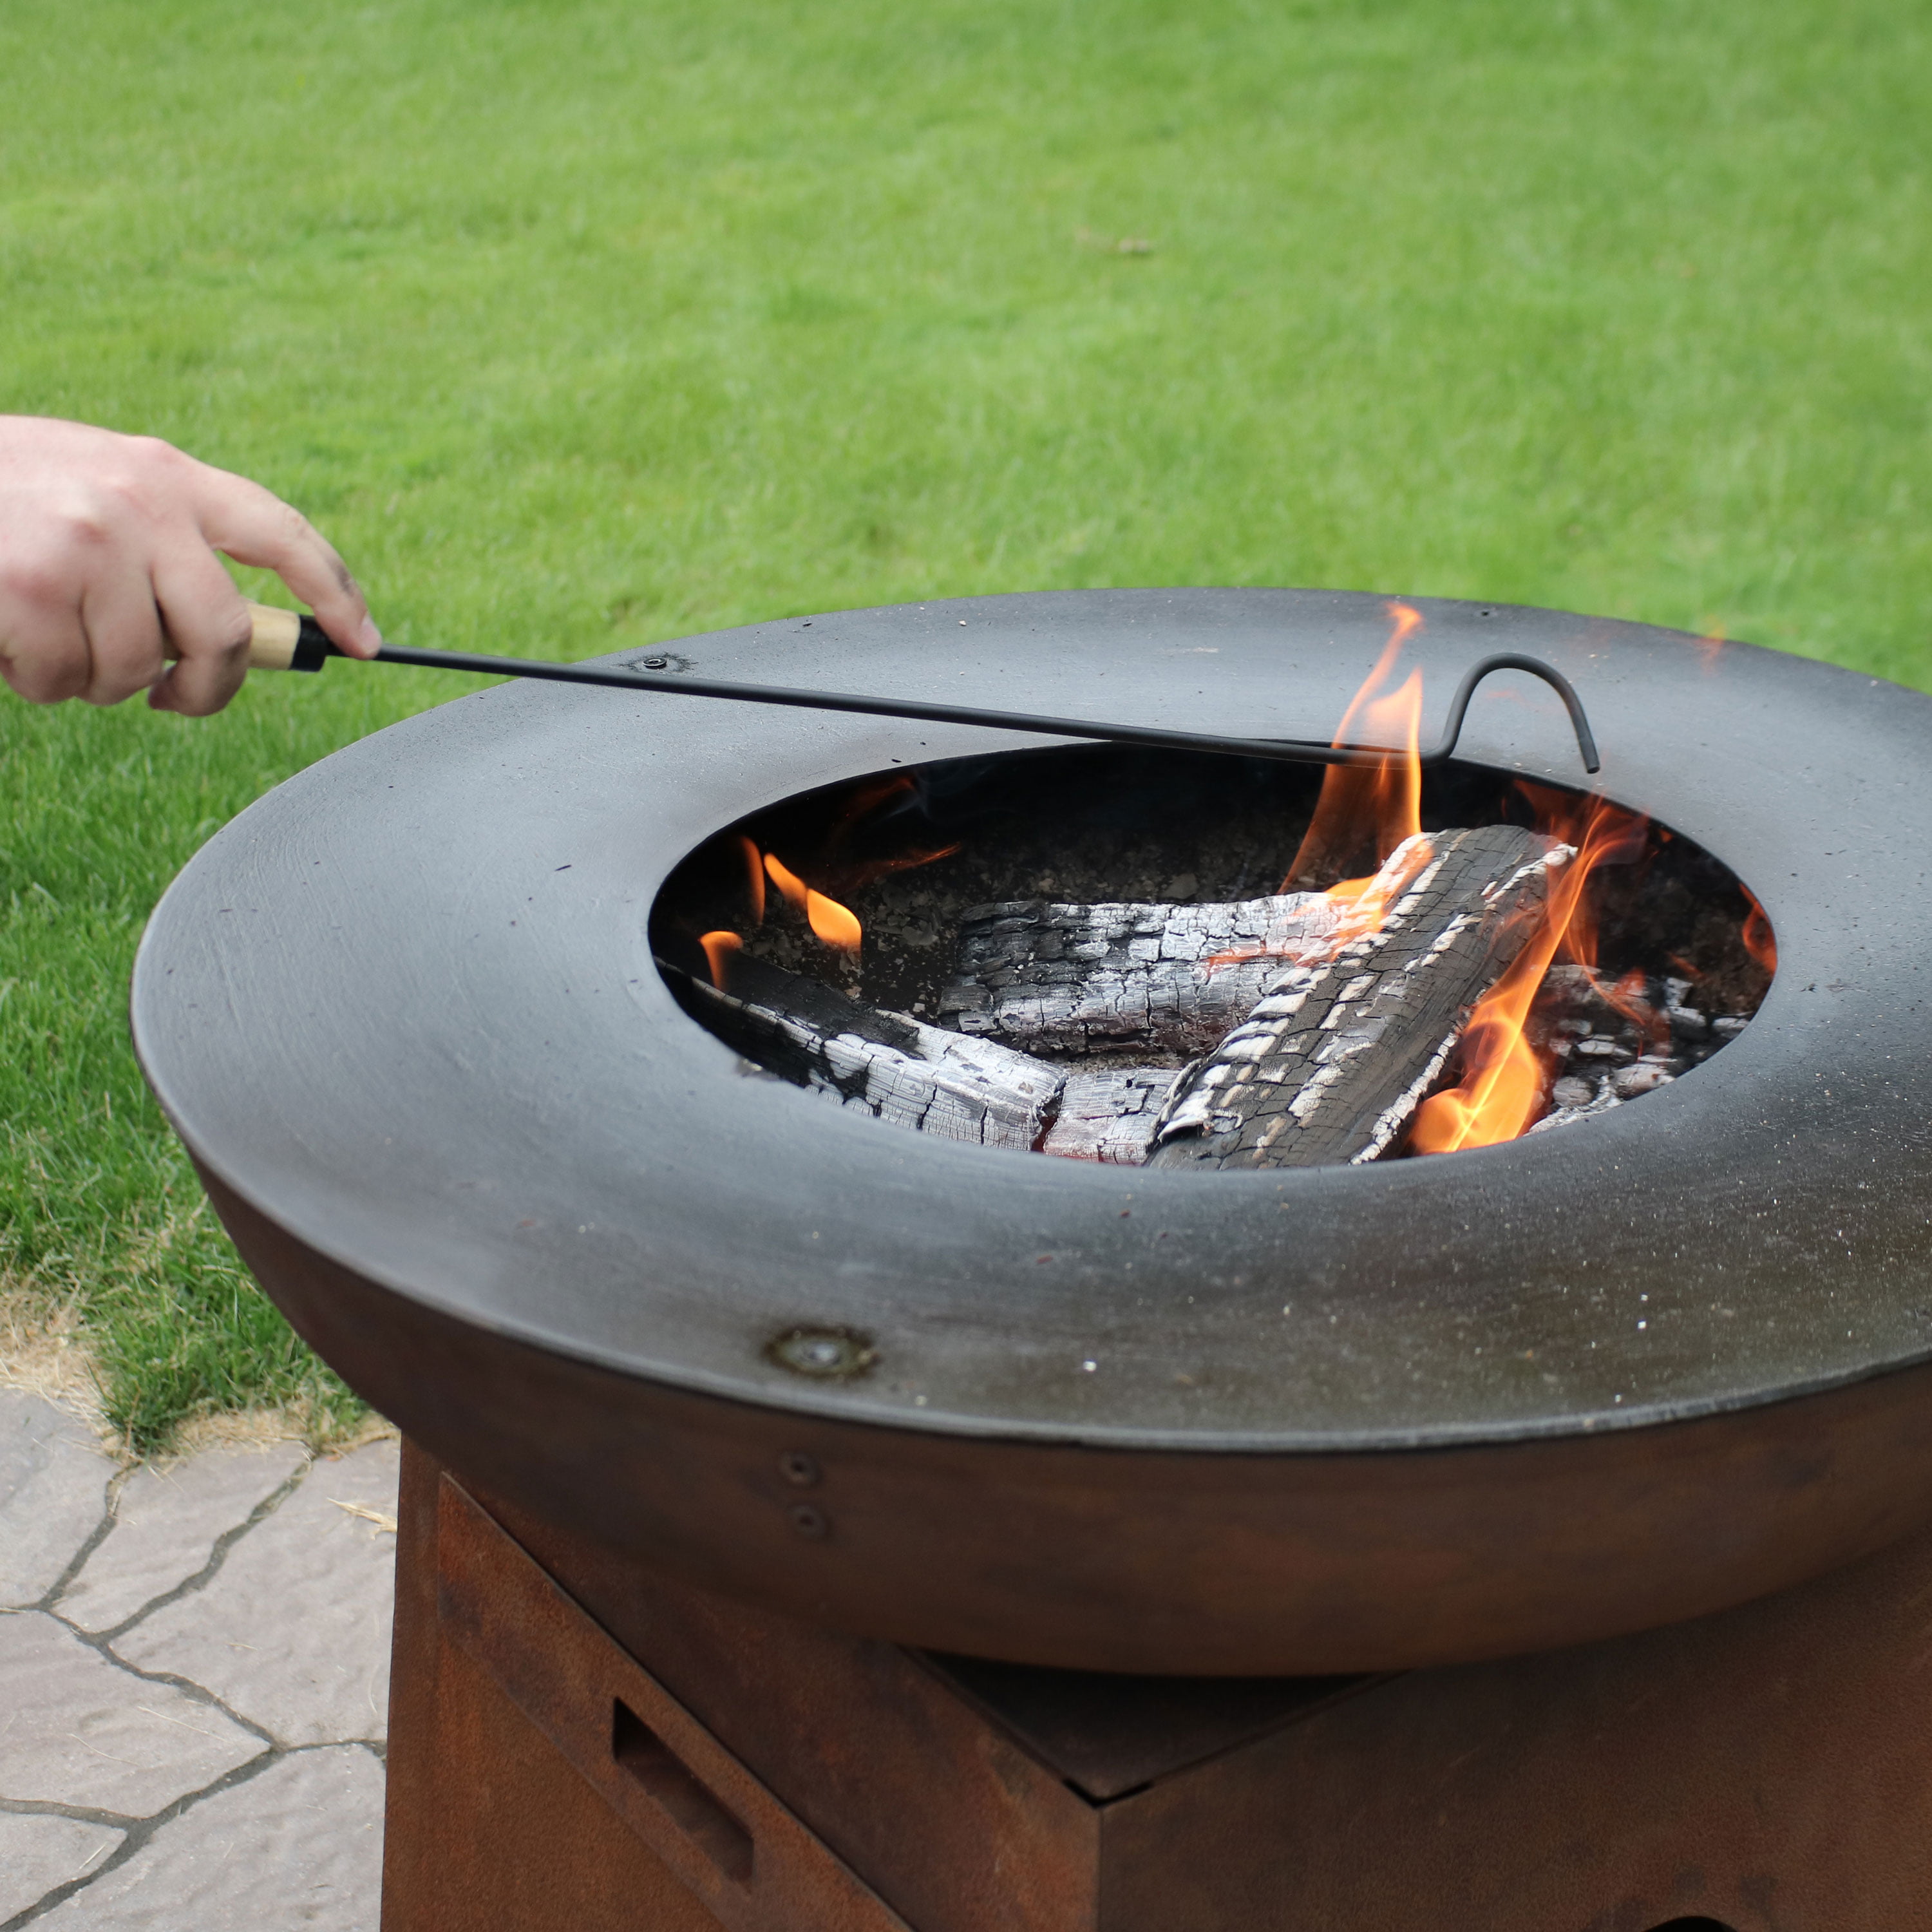 Sunnydaze Fire Pit Stick, Heat Resistant Stones For Fire Pit